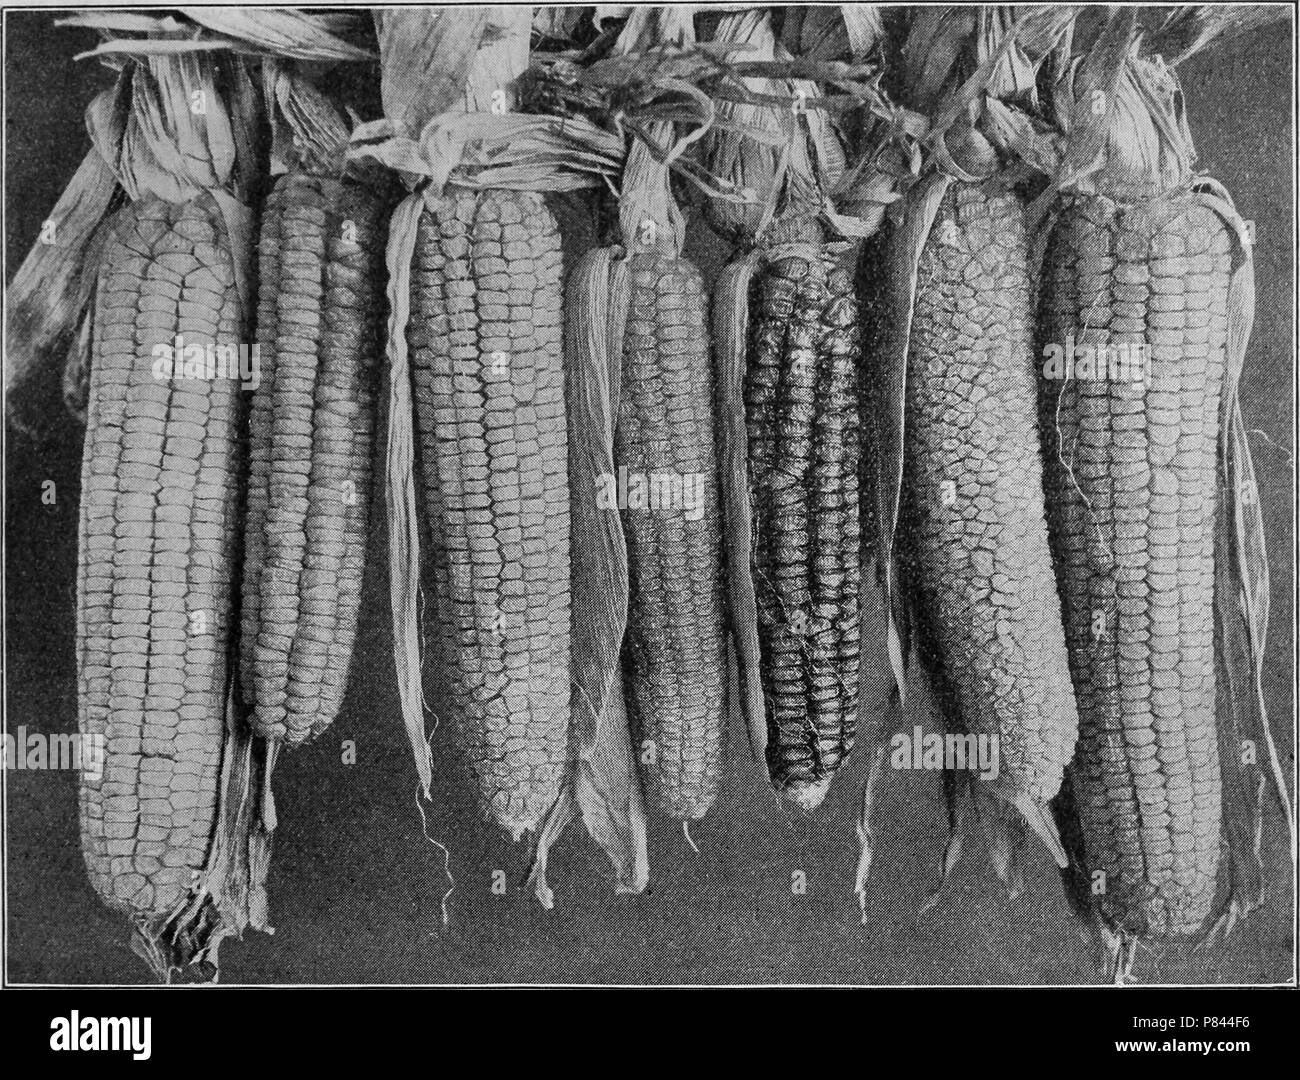 Siete Potters Excelsior clips de maíz mejorado digitalmente y color, fotografía, 1904. Cortesía de Internet Archive. () Foto de stock